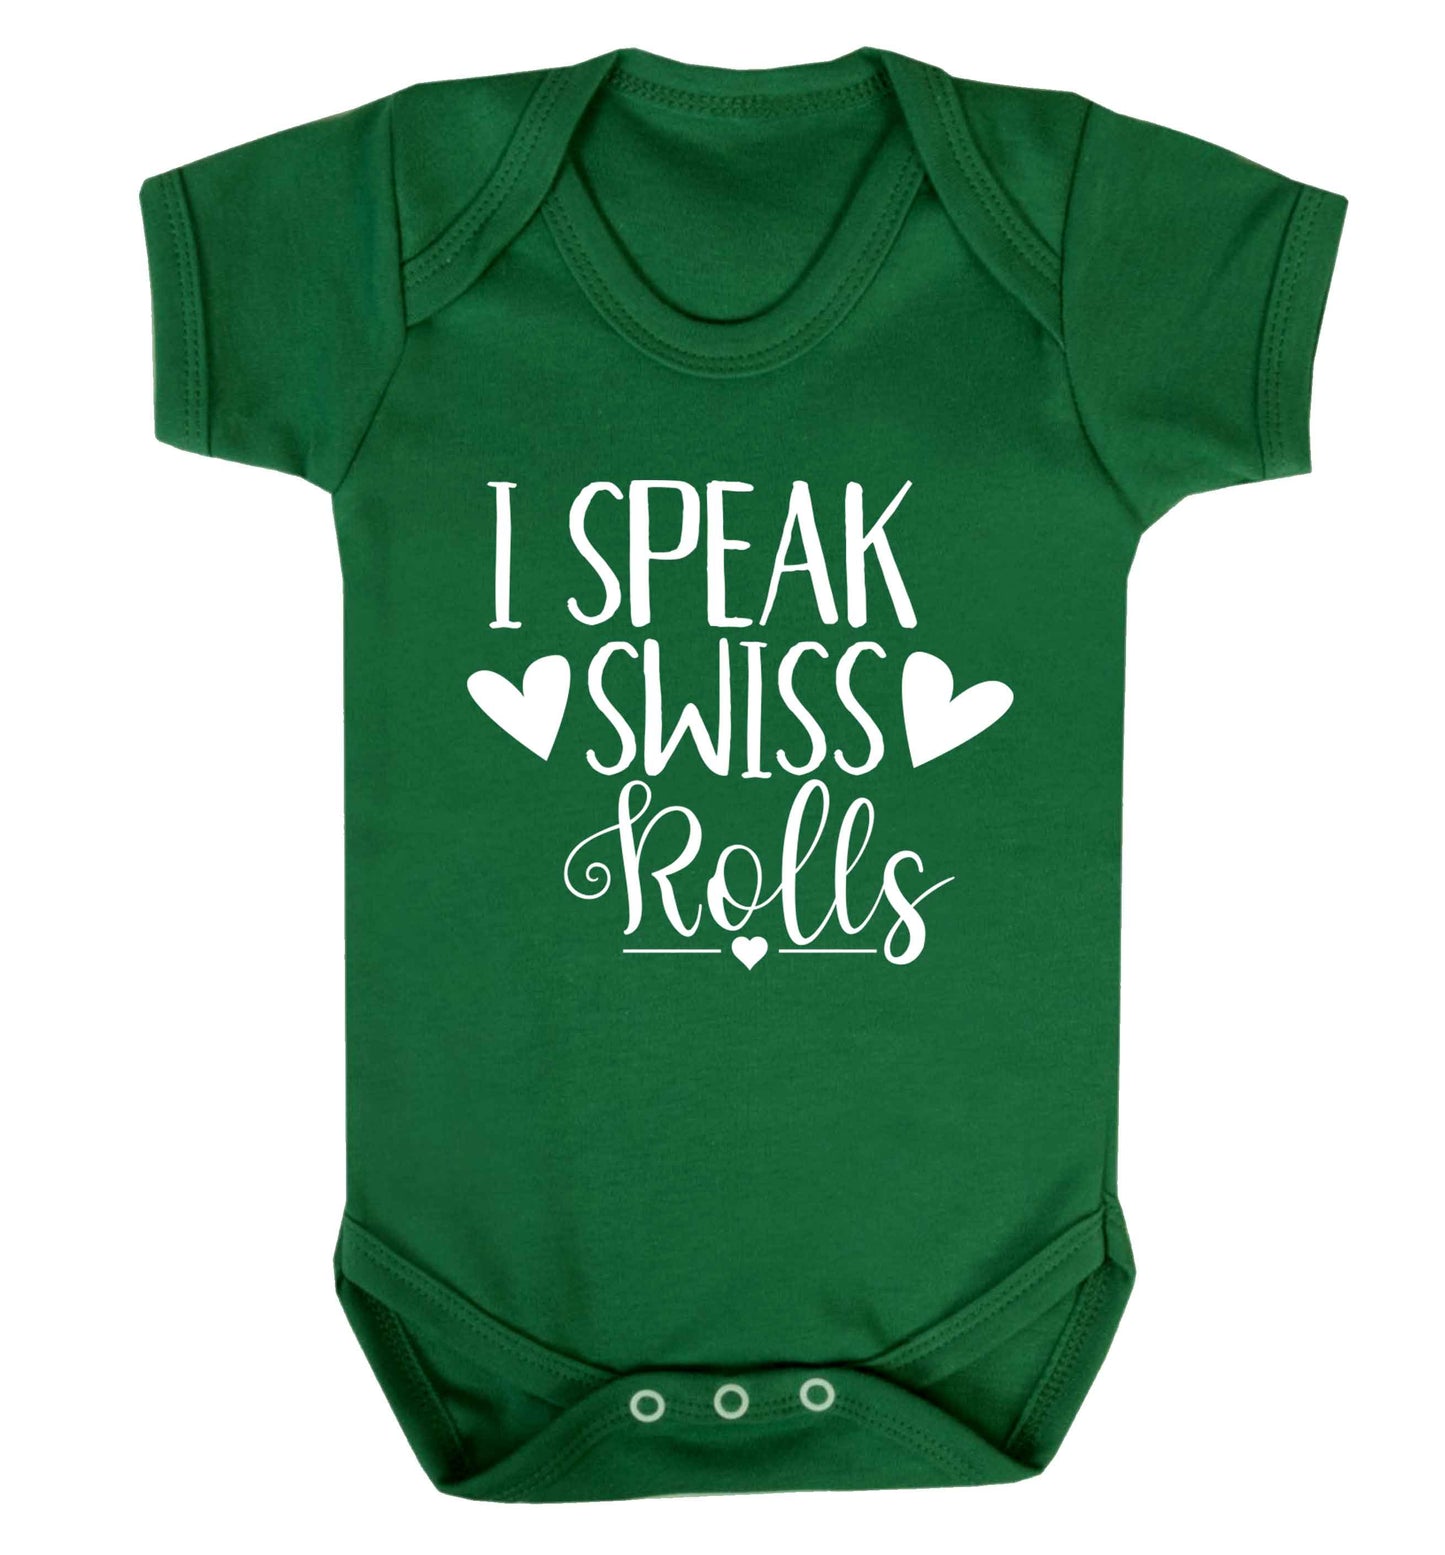 I speak swiss..rolls Baby Vest green 18-24 months